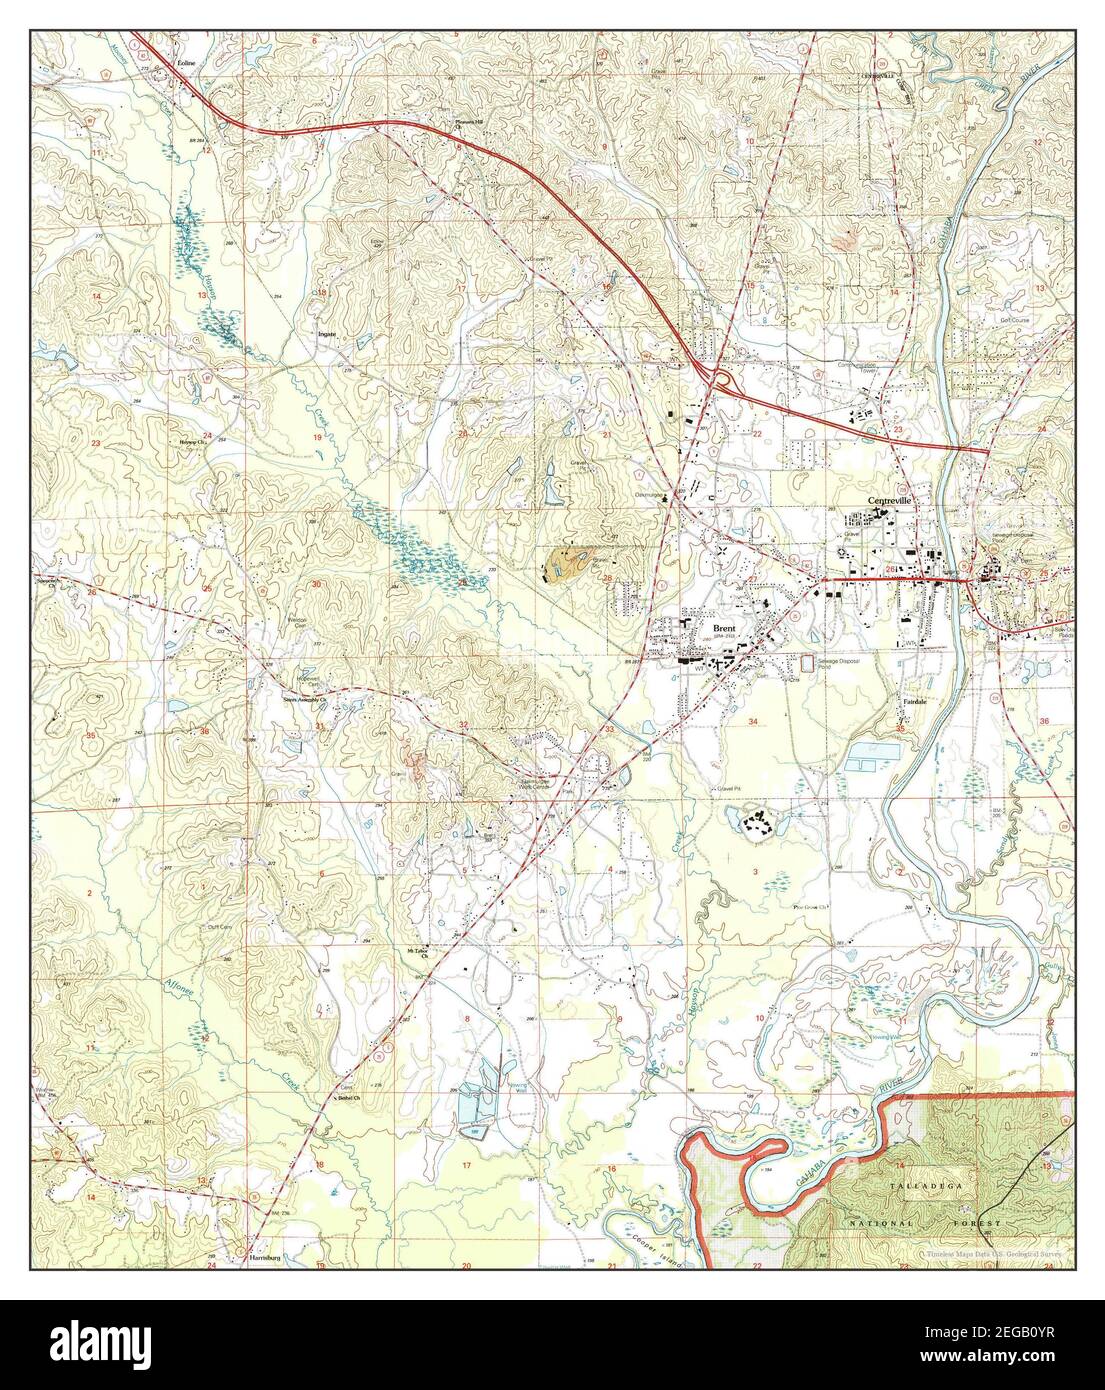 Centerville West, Alabama, carte 2002, 1:24000, États-Unis d'Amérique par Timeless Maps, données U.S. Geological Survey Banque D'Images